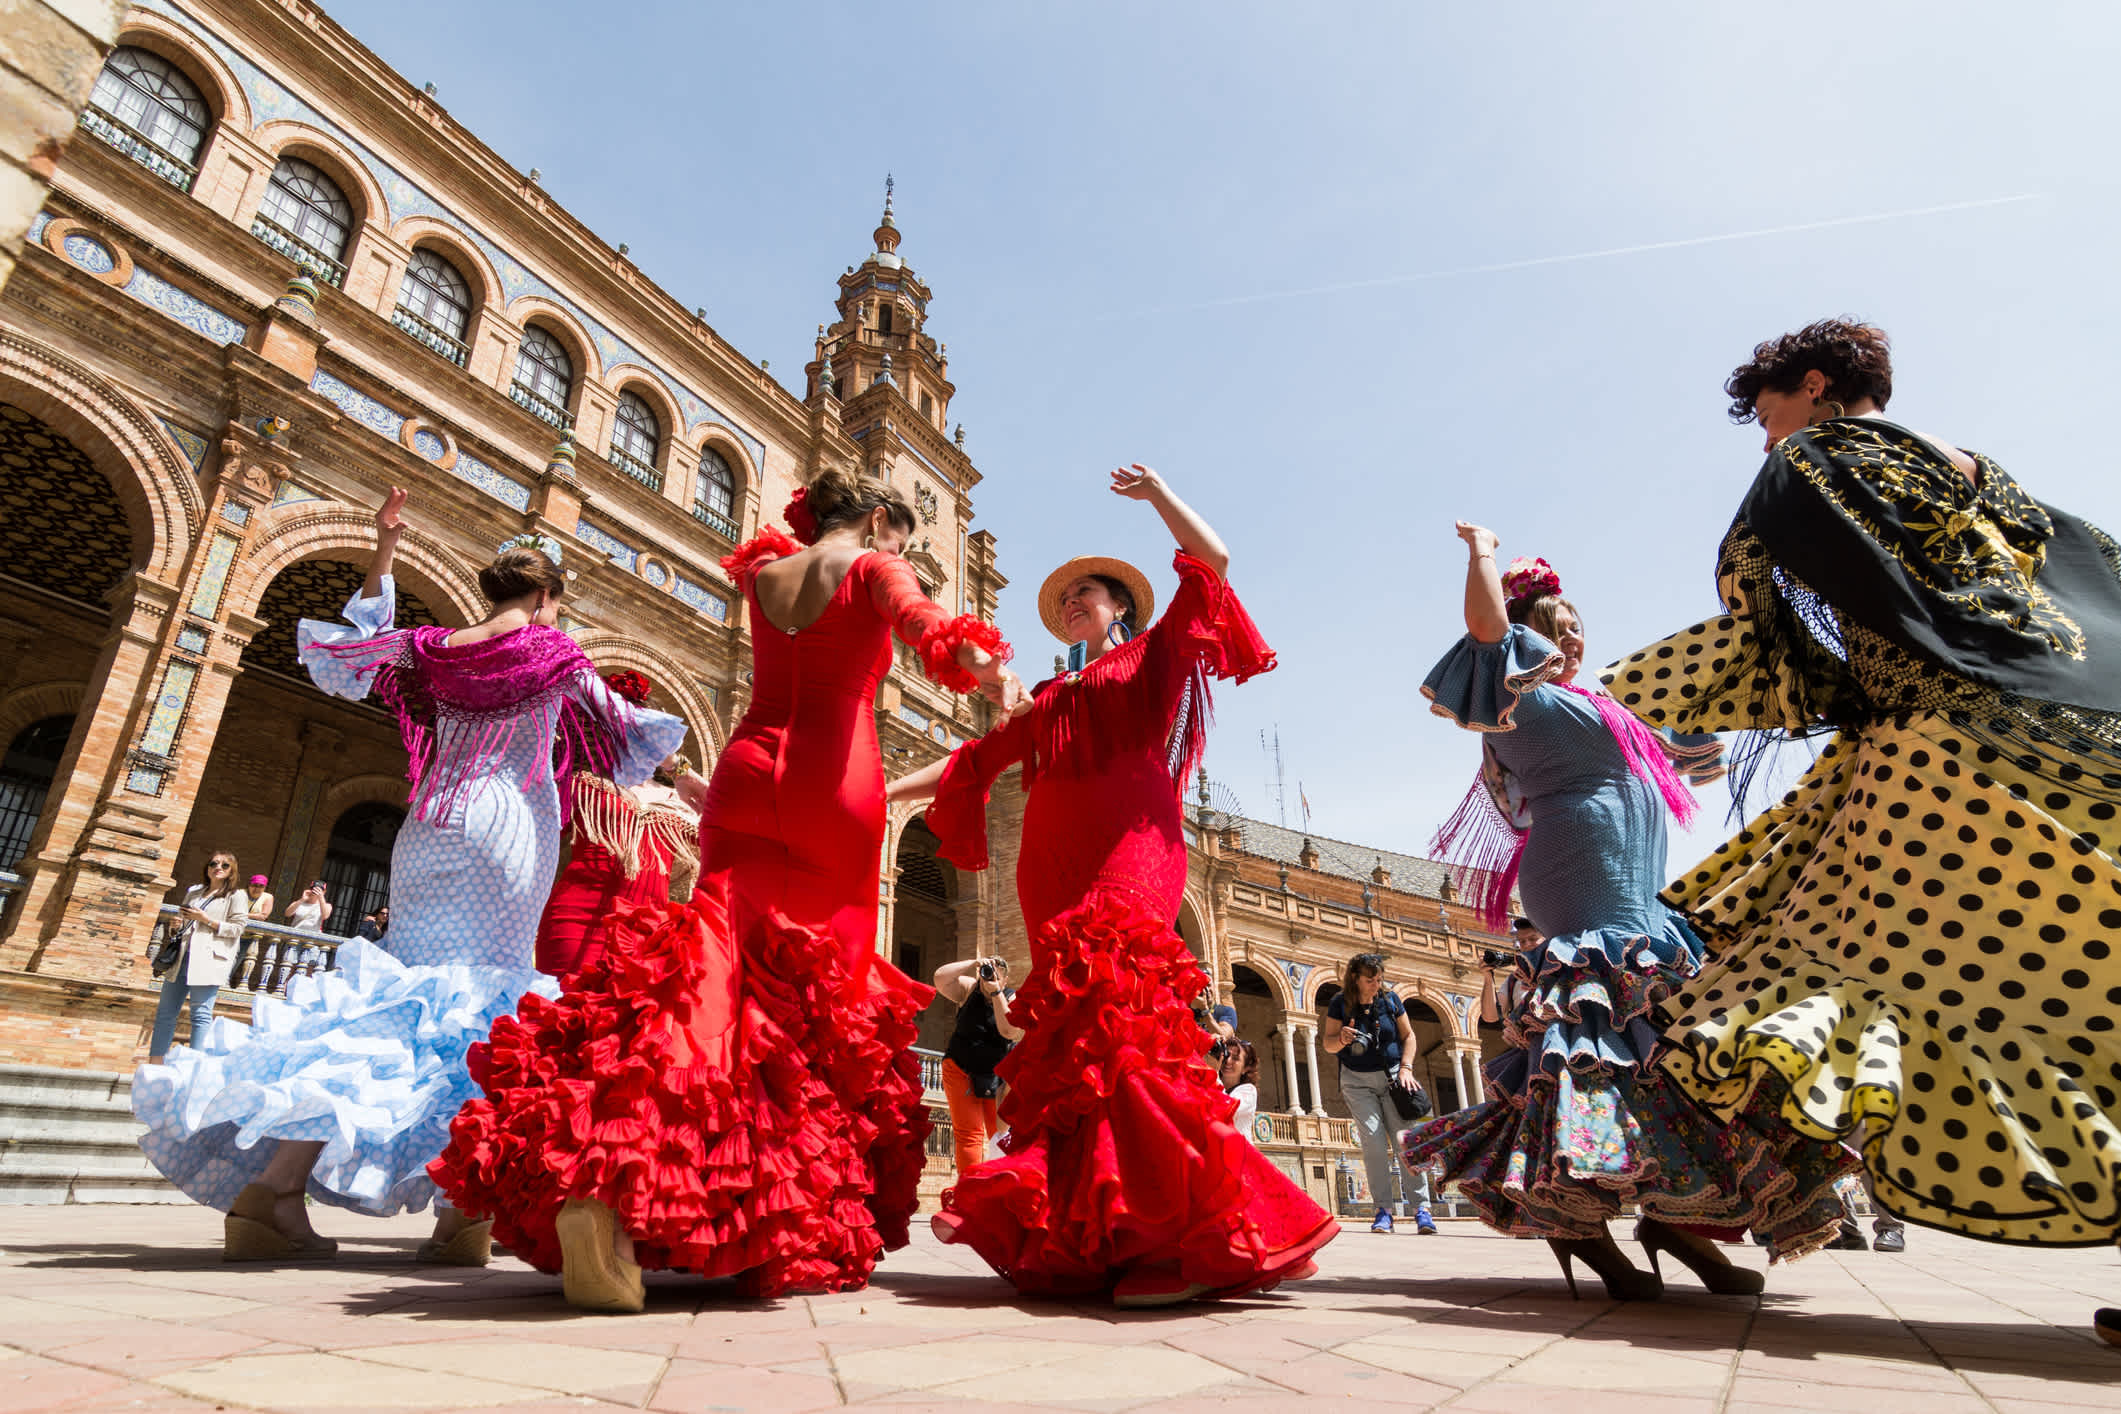 Tranditionelles Event in Spanien: Die Ferias. Ein unvergessliches Erlebnis bei einem Spanien Urlaub.